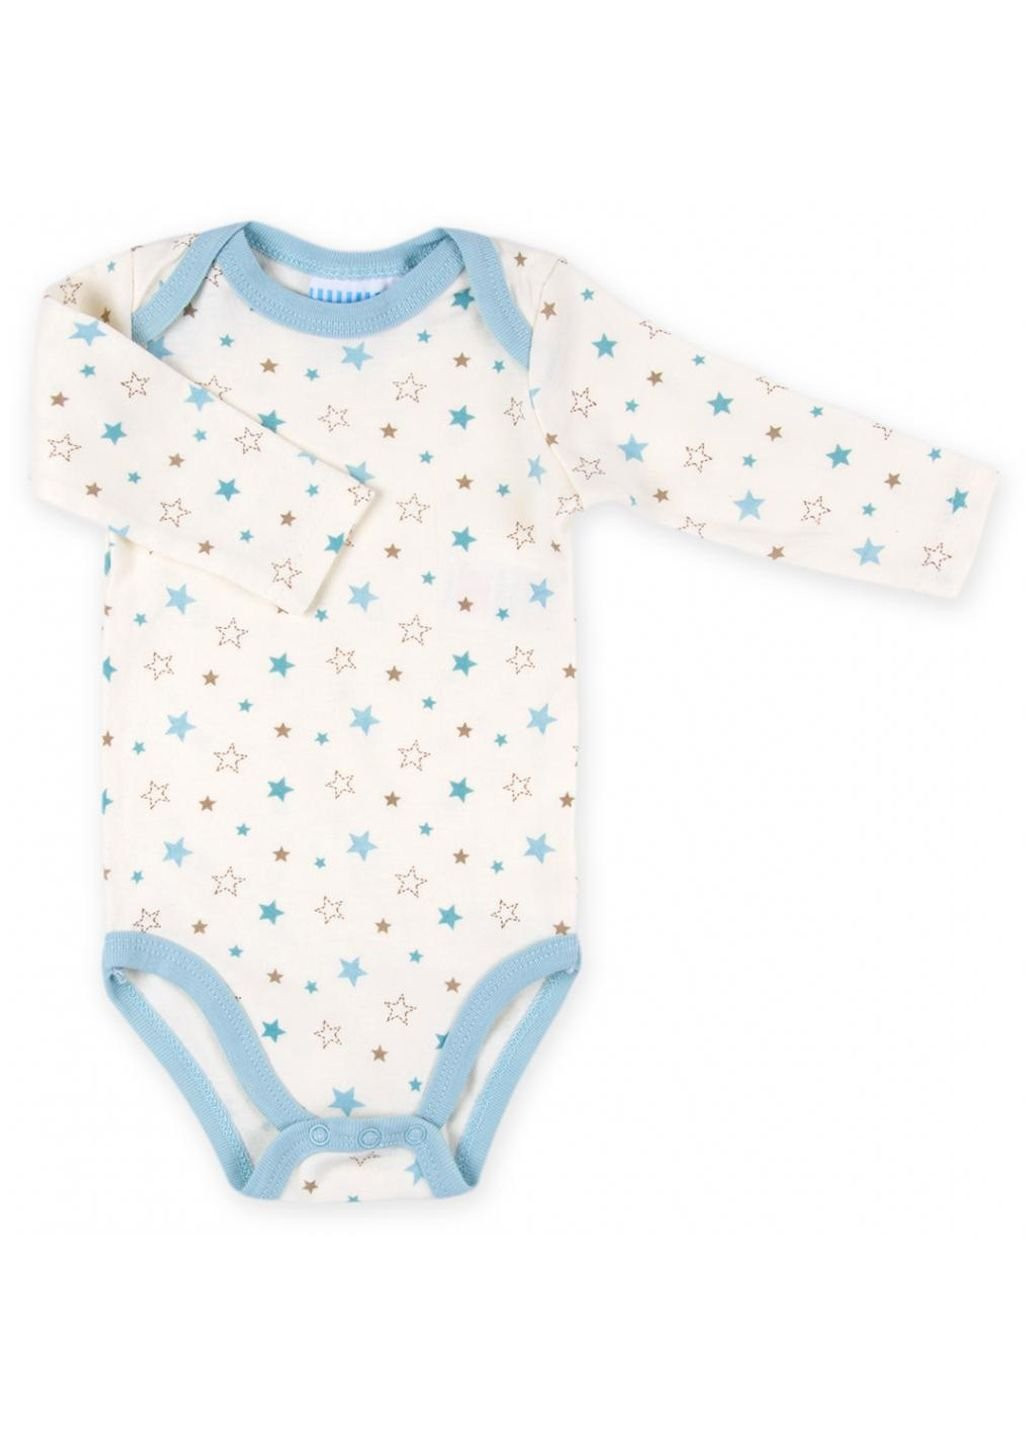 Голубой демисезонный набор детской одежды для мальчиков подарочный 7 предметов (g8314.0-3) Luvena Fortuna